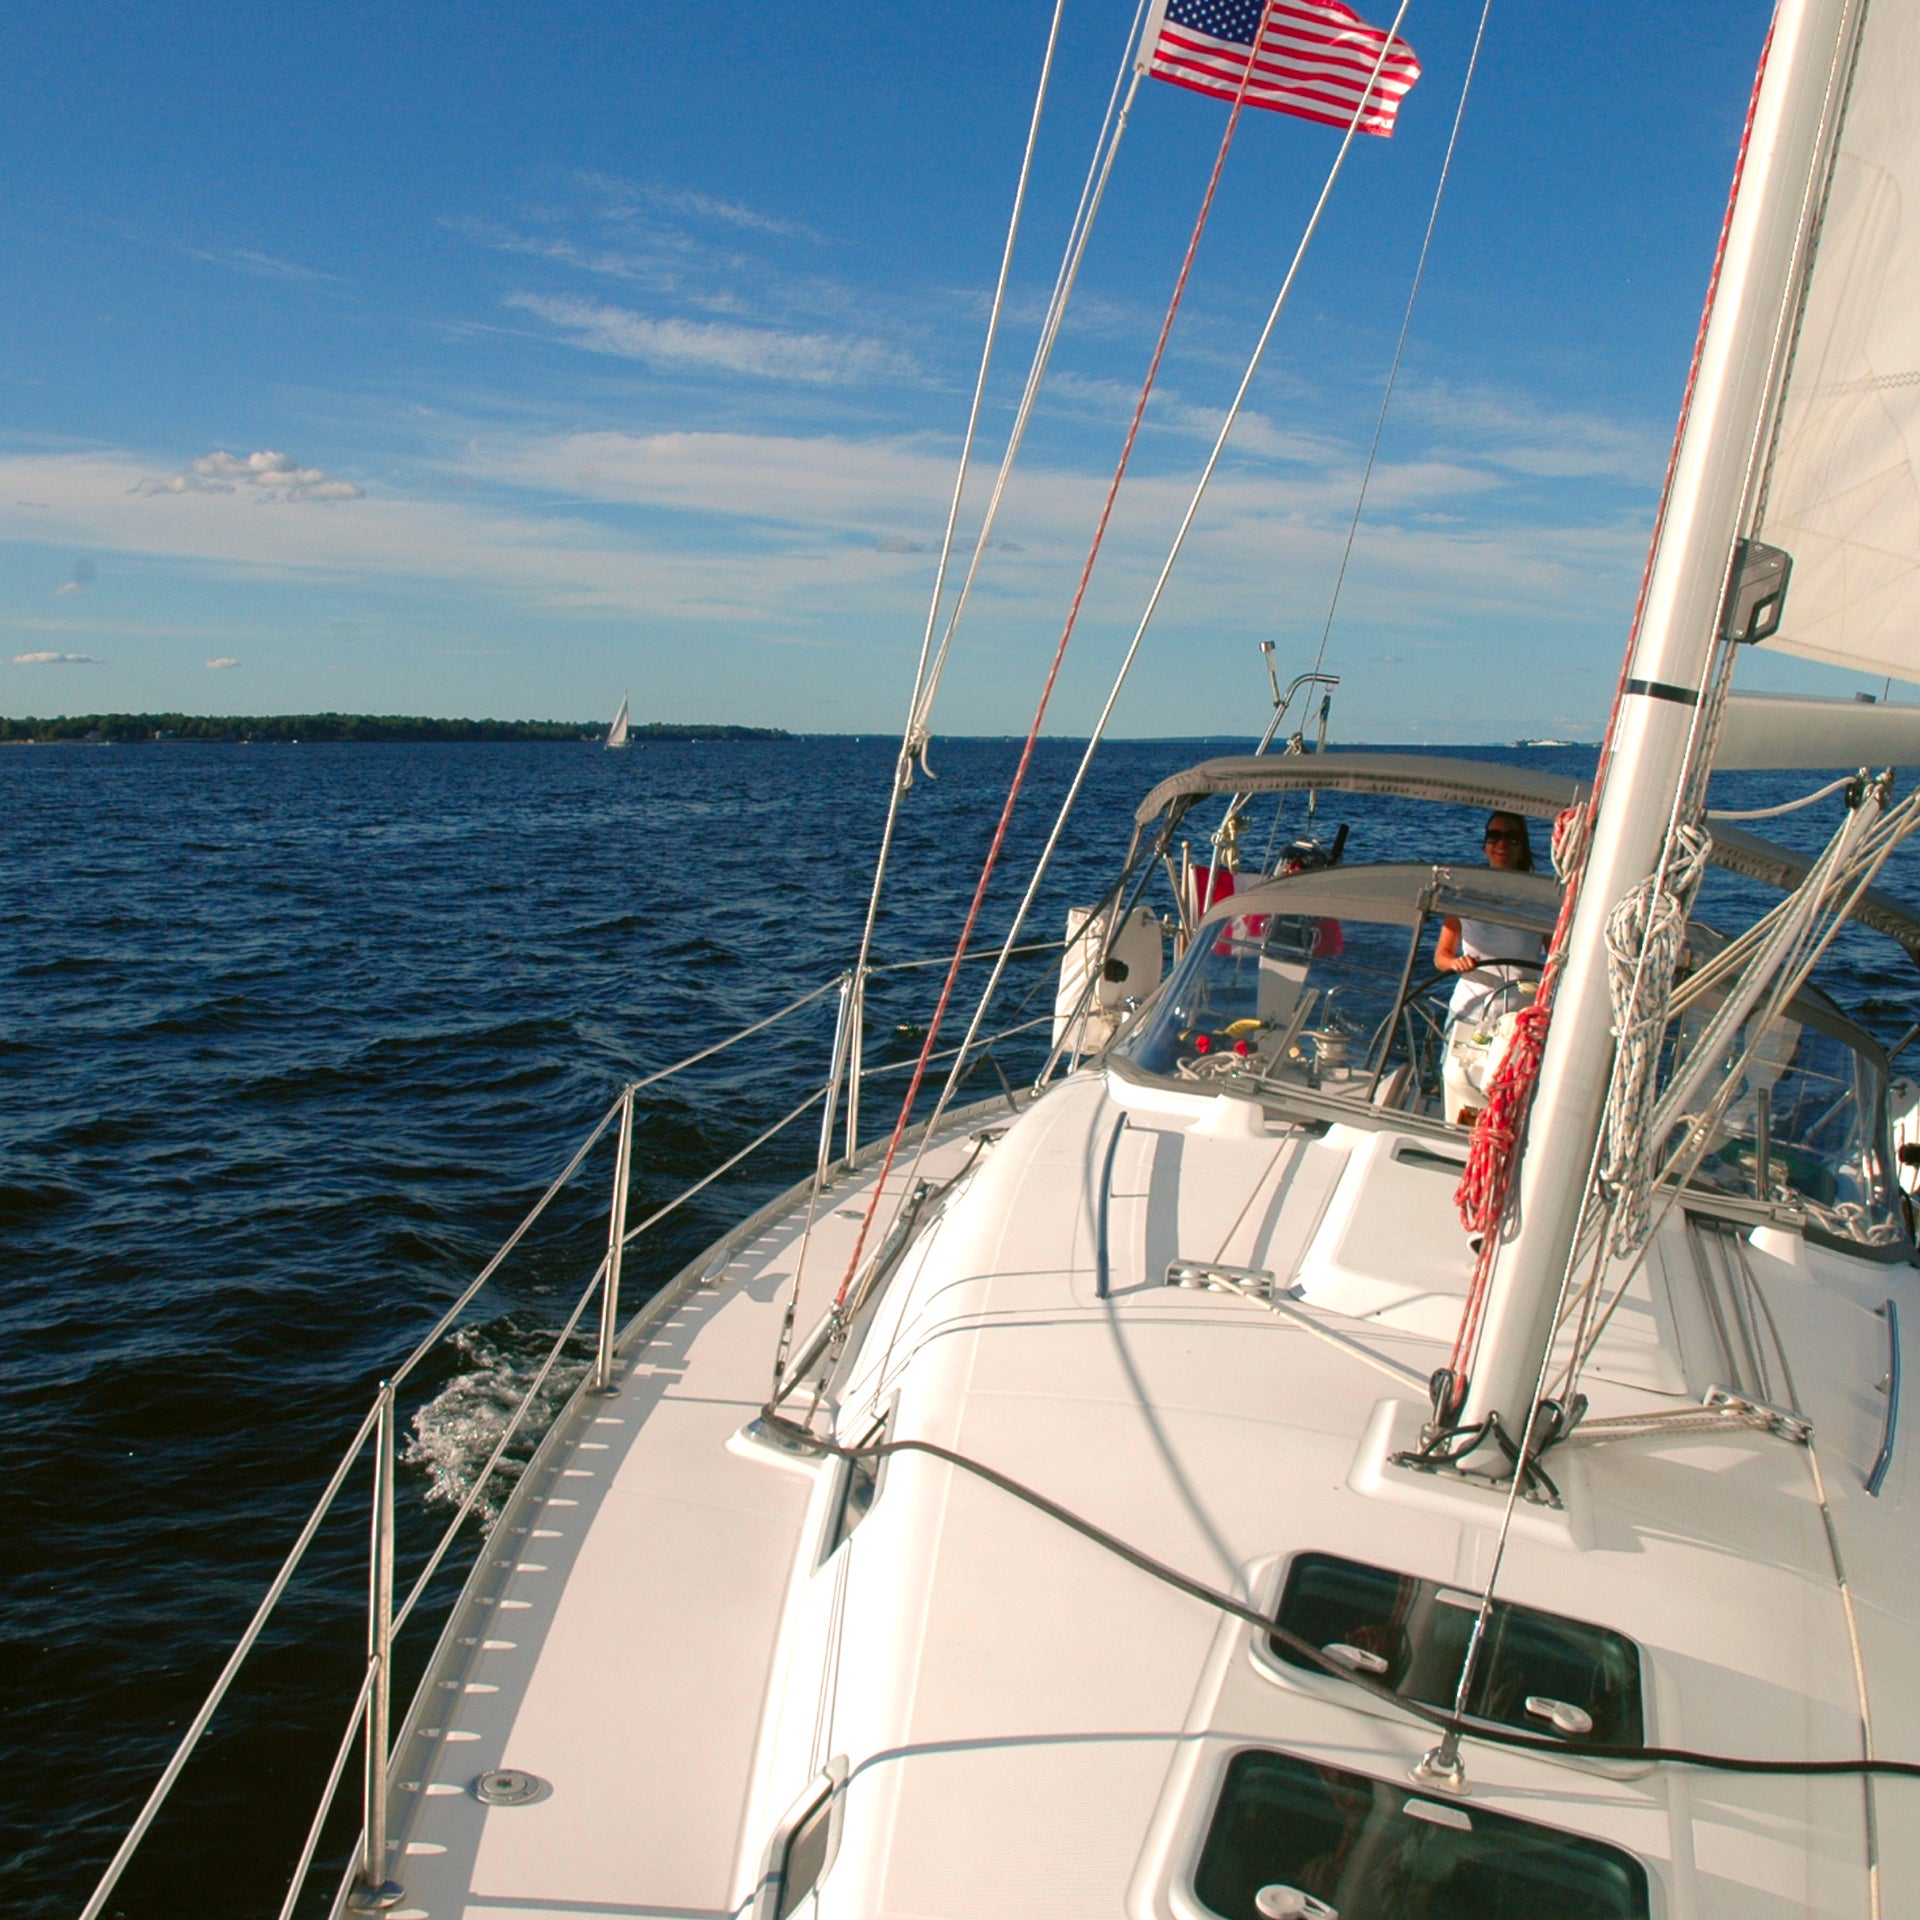 Dream Yacht Charter segelt auf blauem Wasser